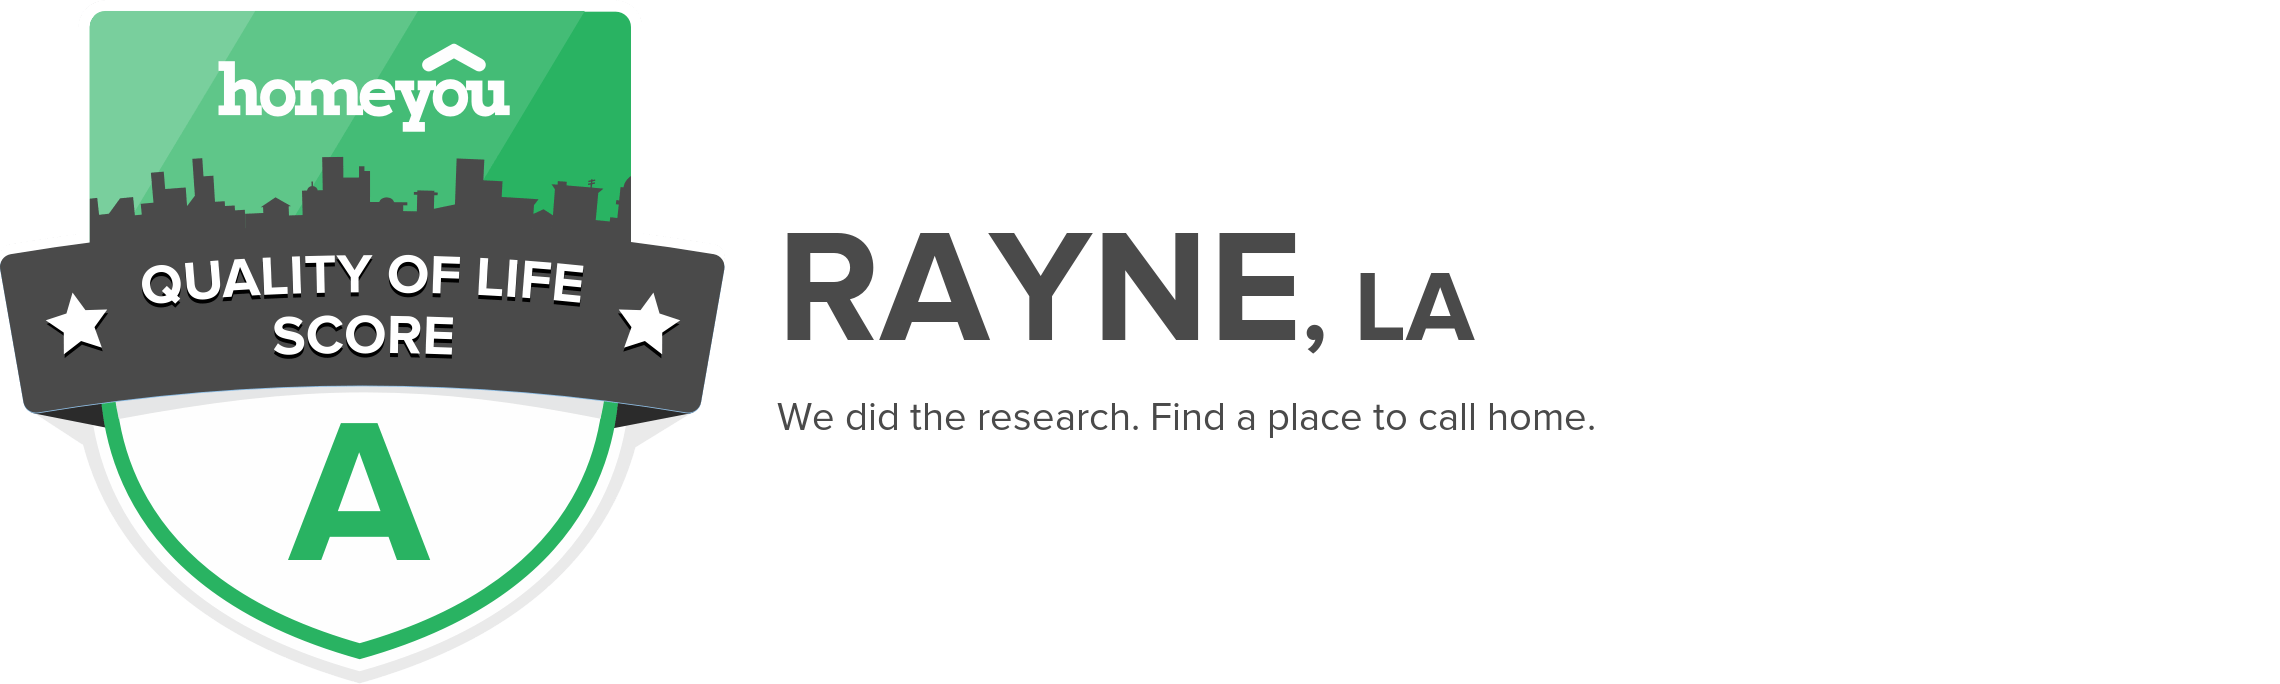 Rayne, LA